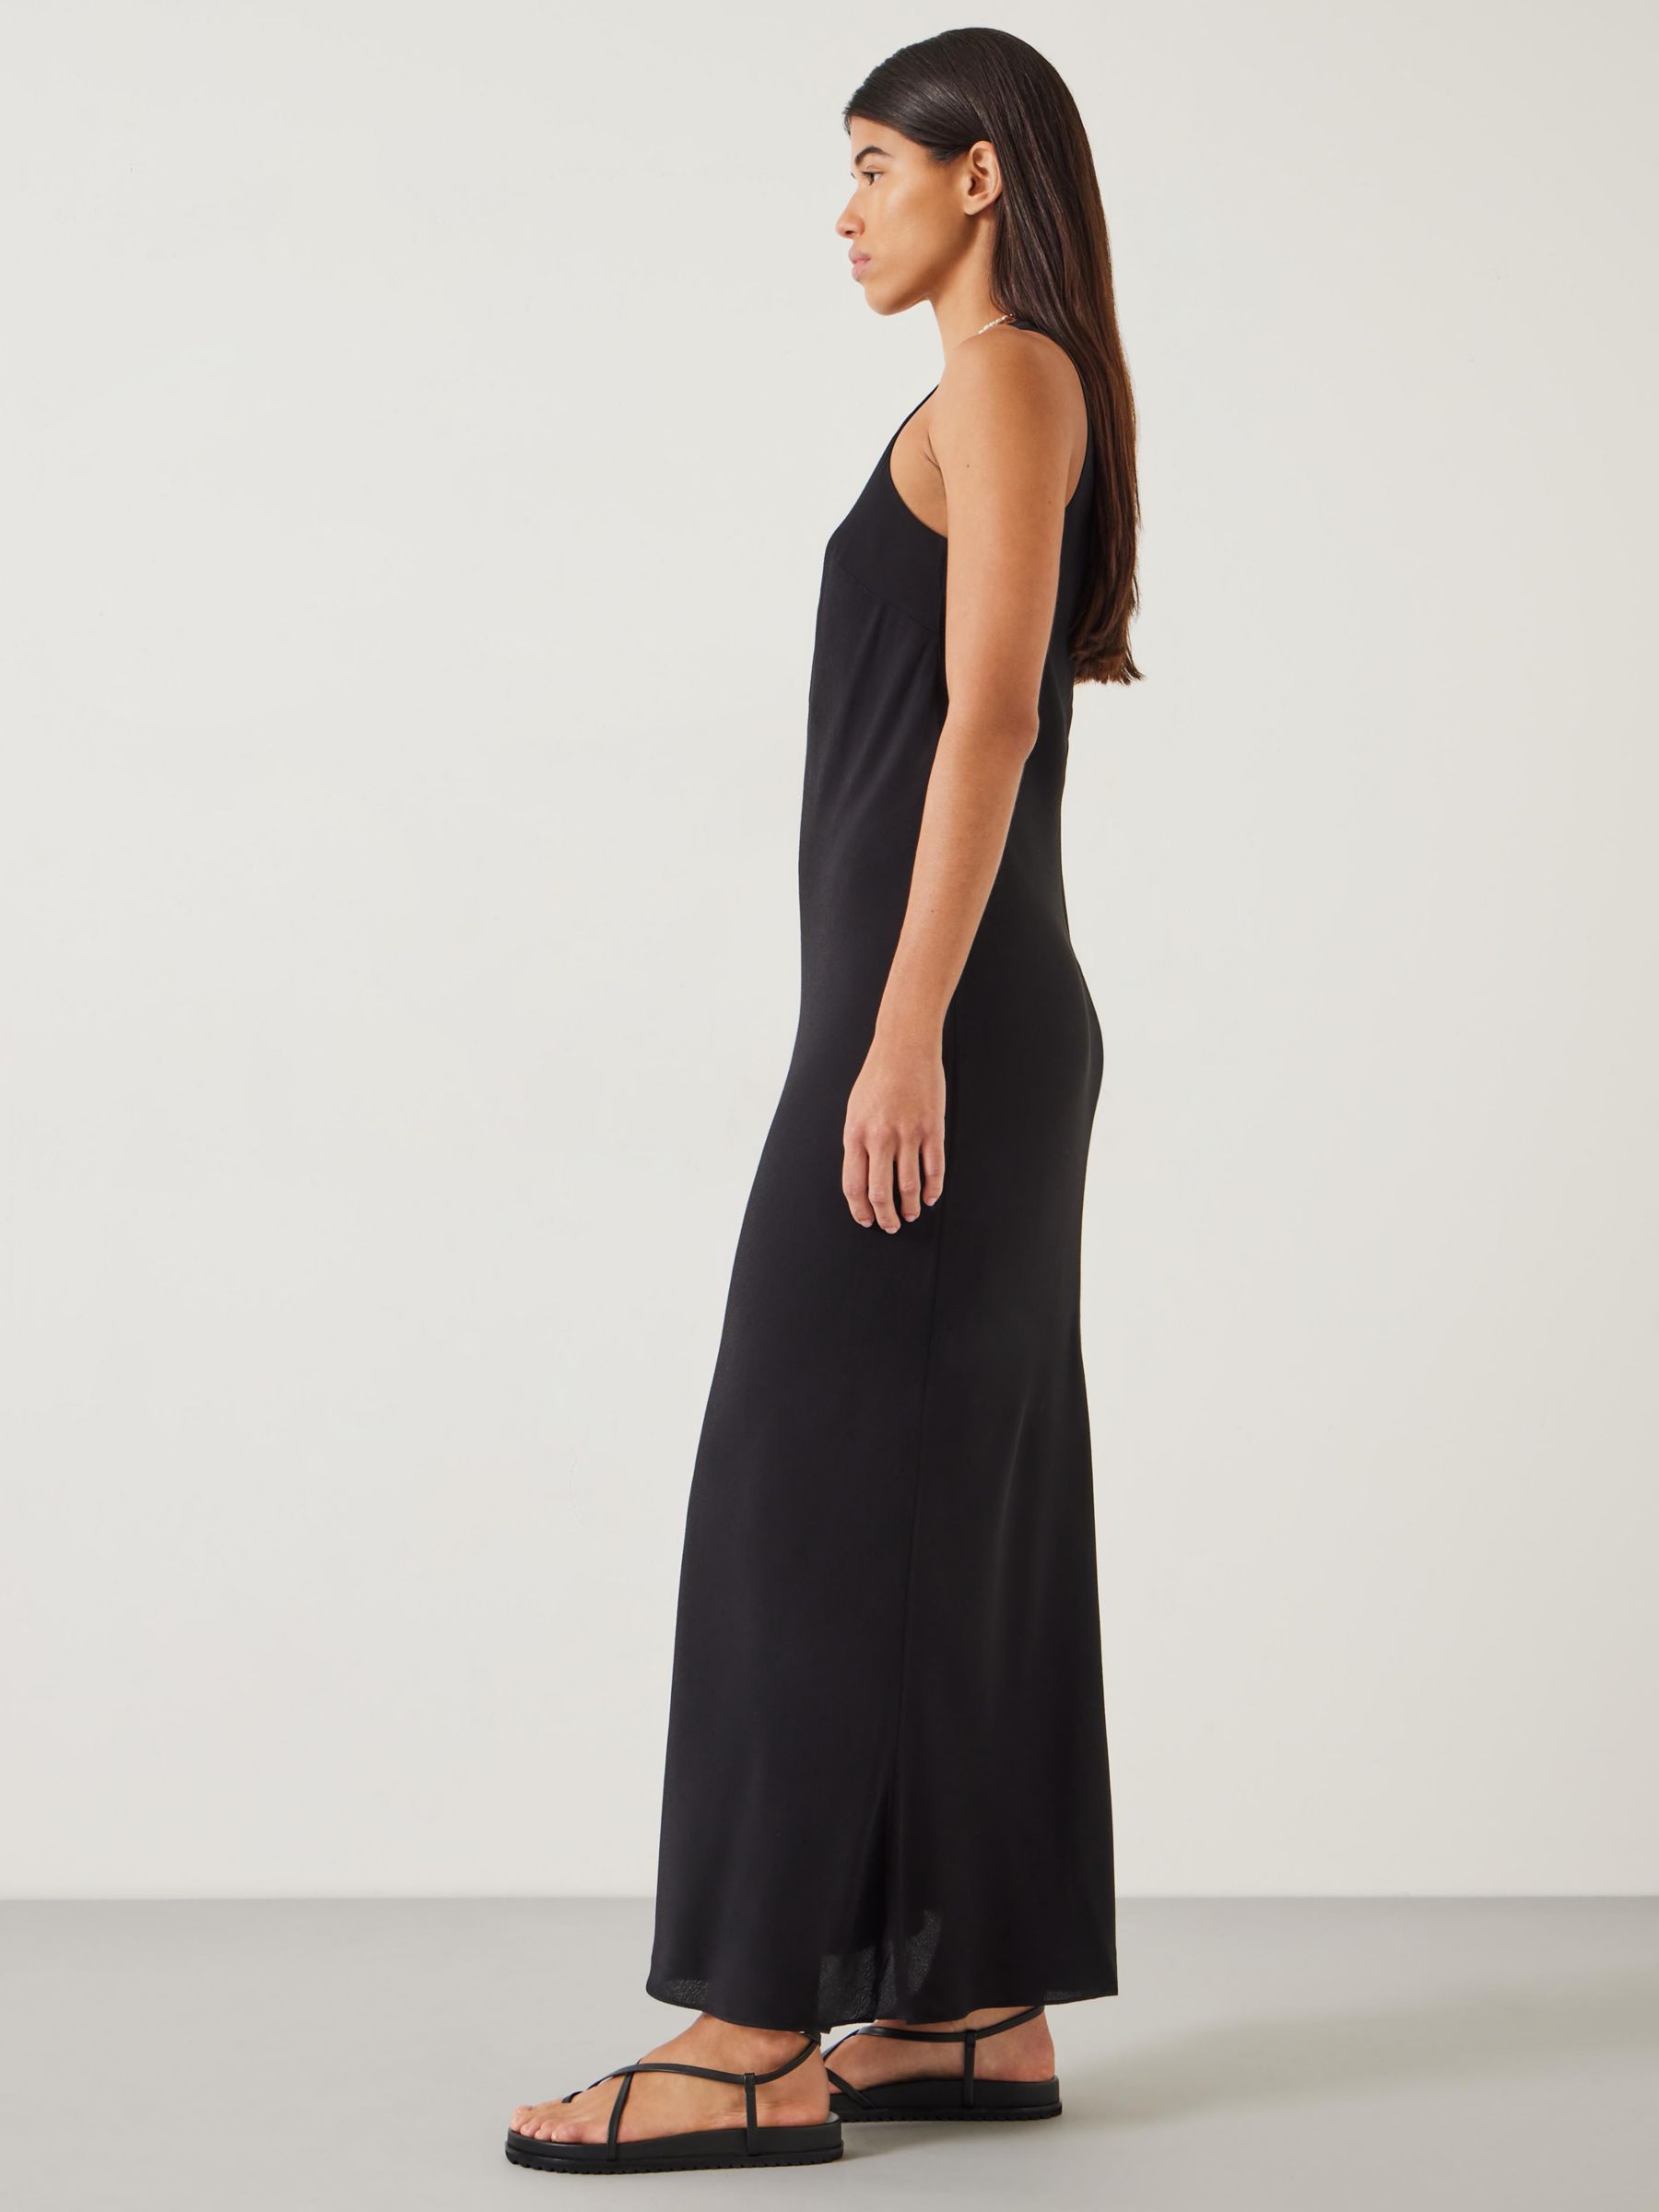 HUSH Imani Maxi Dress, Black, 10